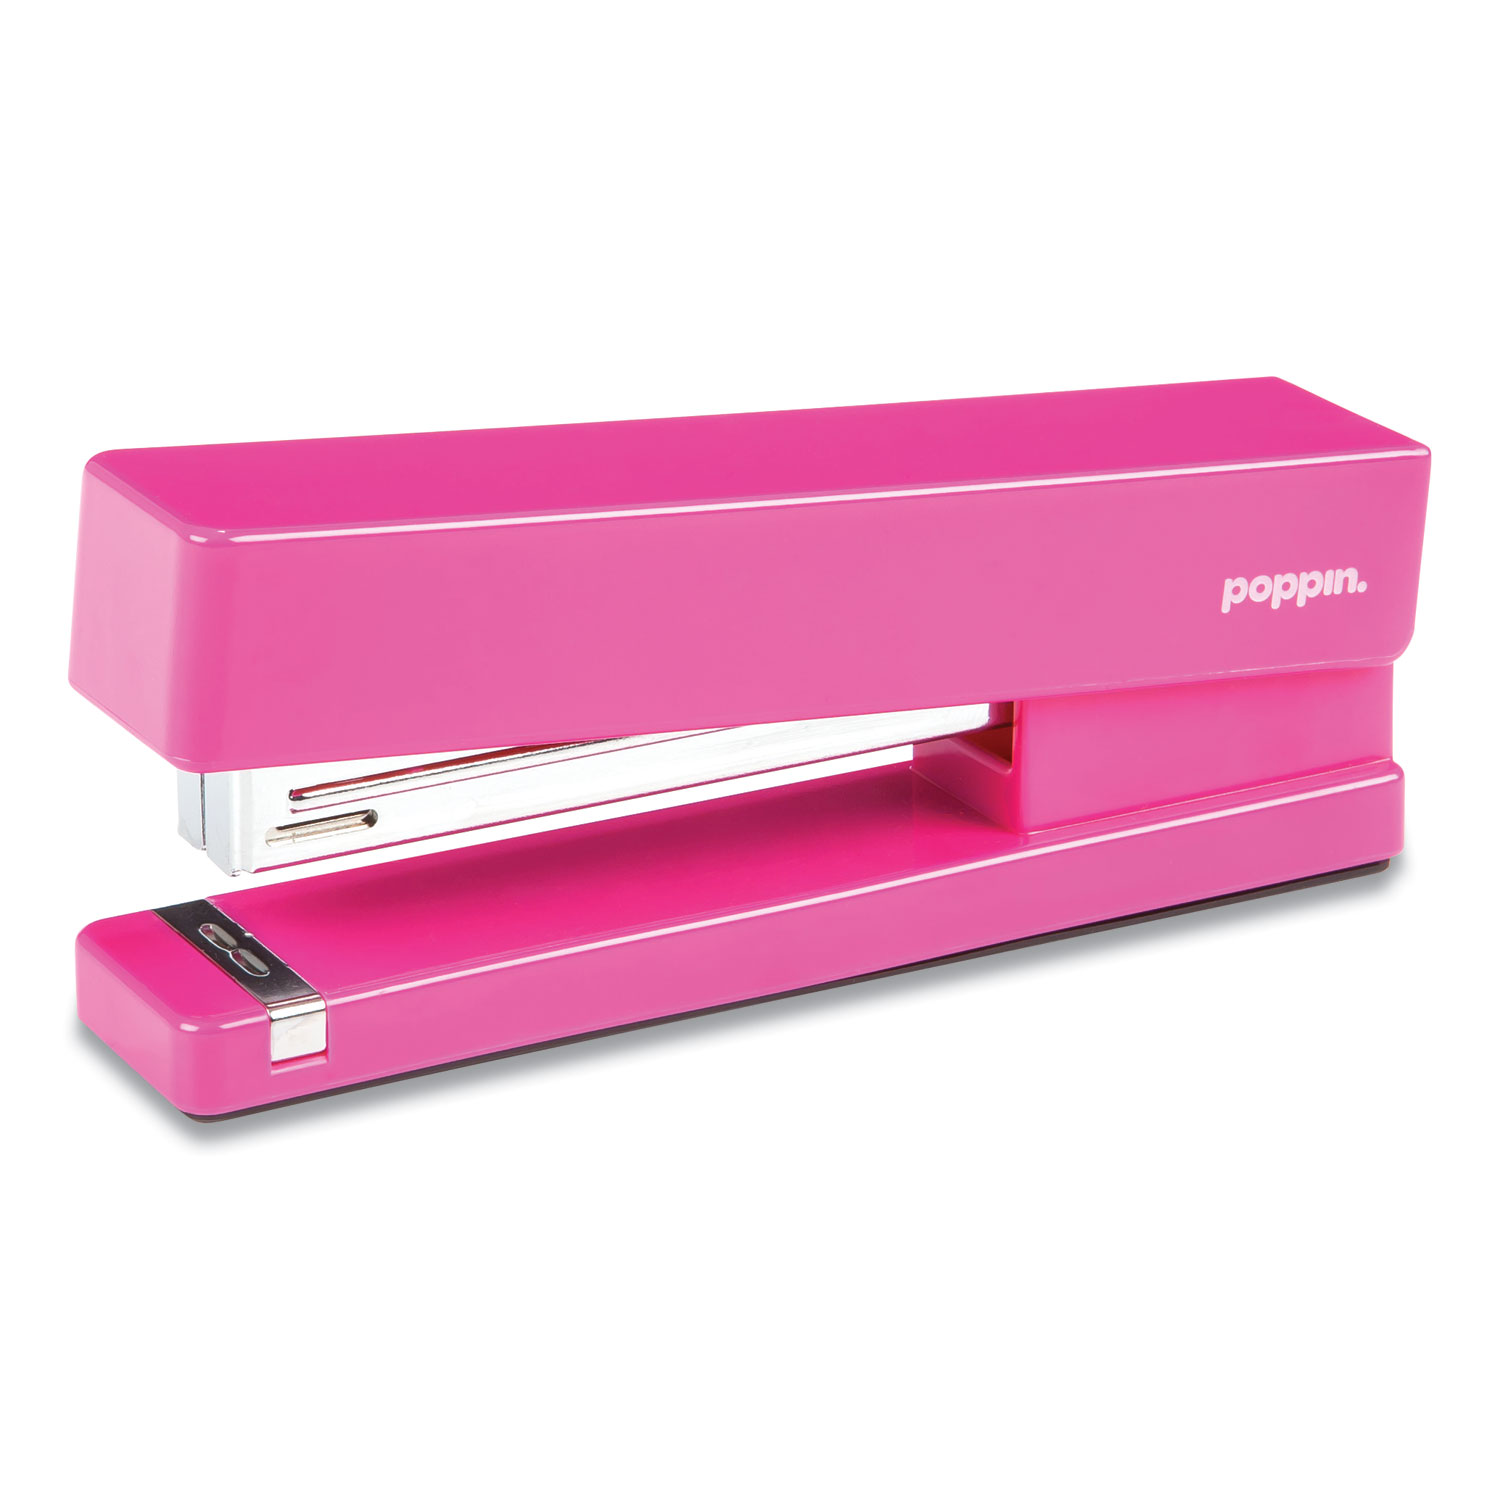  Poppin 100155 Desktop Stapler, 20-Sheet Capacity, Pink (PPJ49060) 